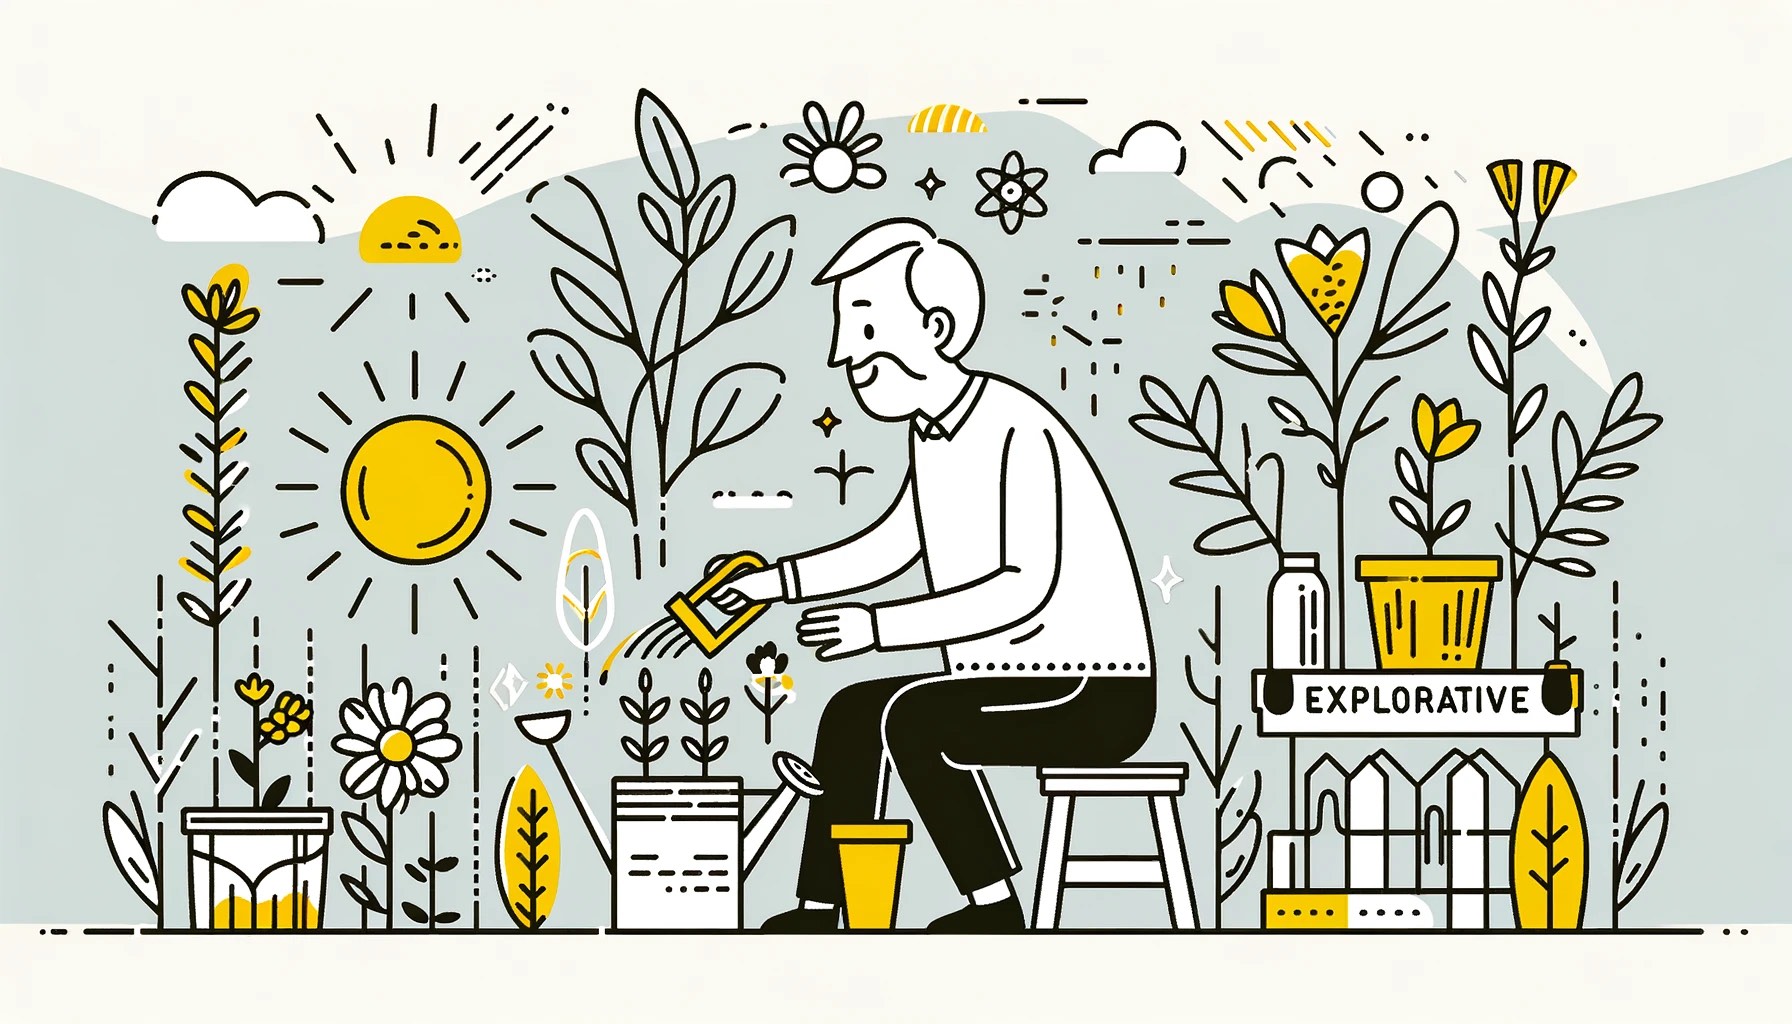 Een oudere persoon in een tuin, blij en nieuwsgierig bezig met het planten van zaden in potten. Tuiniergereedschap en een gieter zijn geaccentueerd in geel, wat hun actieve betrokkenheid en ontdekking bij de taak symboliseert